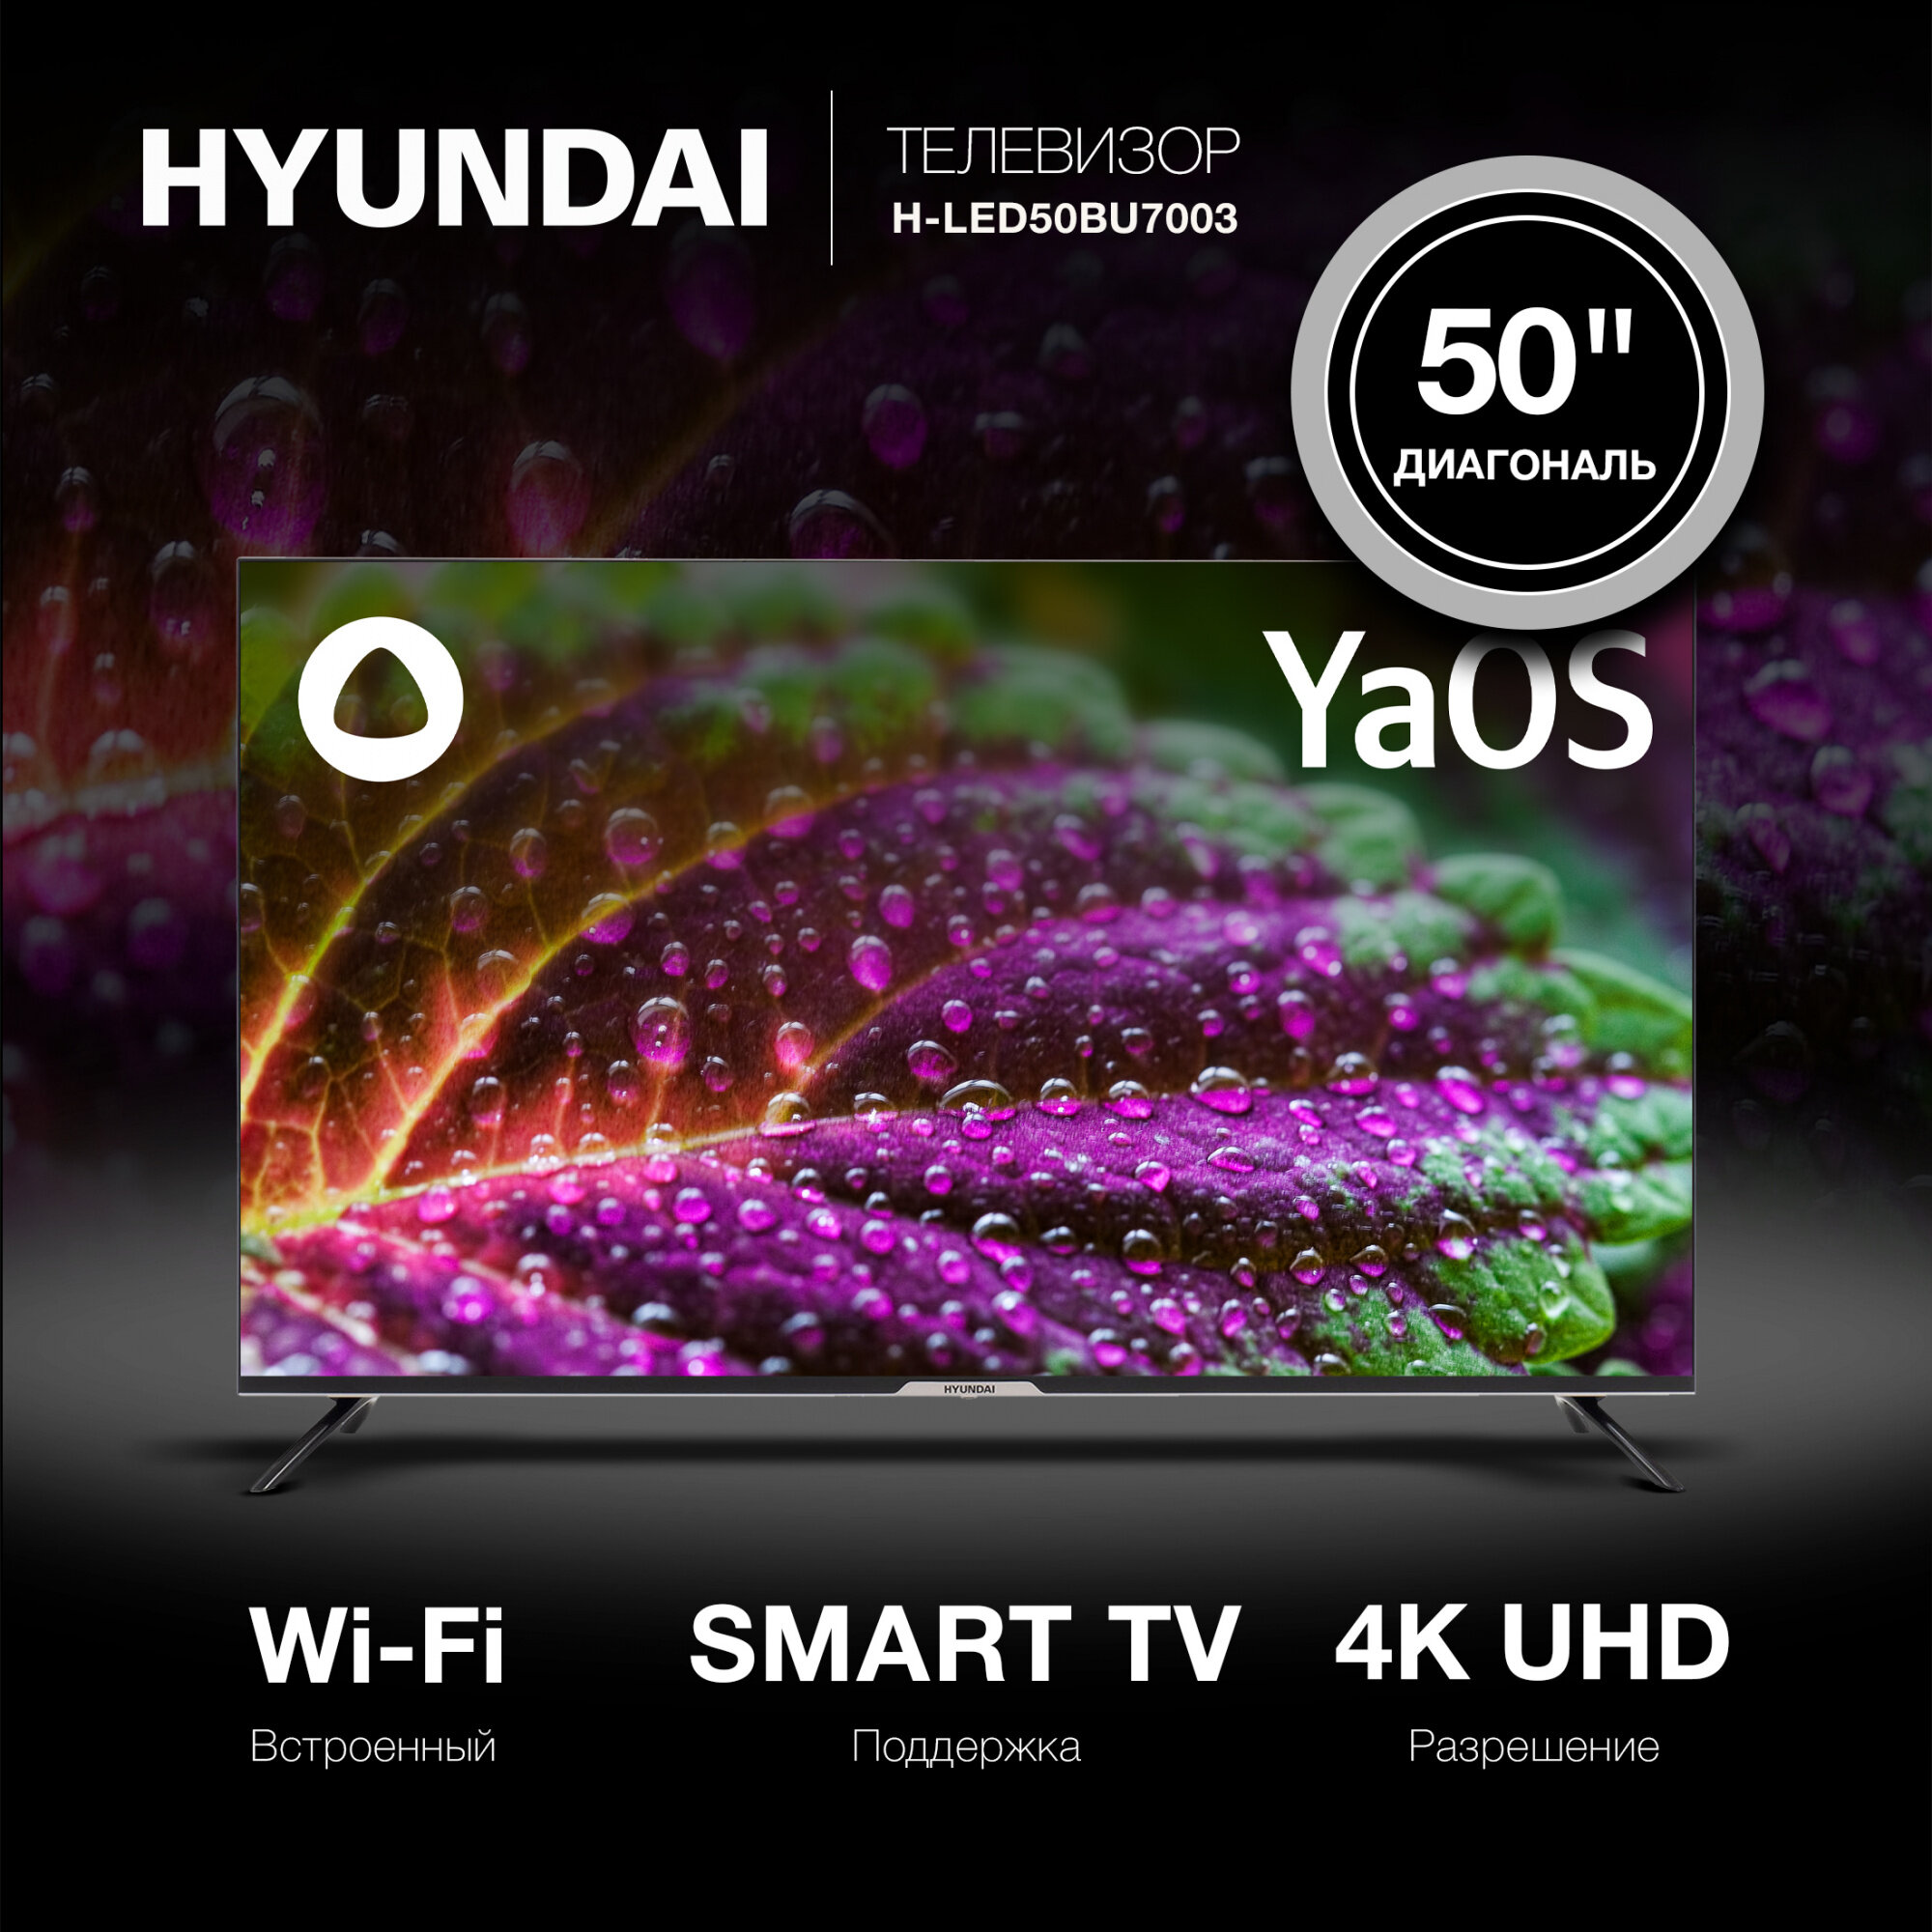 Телевизор Hyundai Яндекс. ТВ H-LED50BU7003, 50", LED, 4K Ultra HD, YaOS, черный